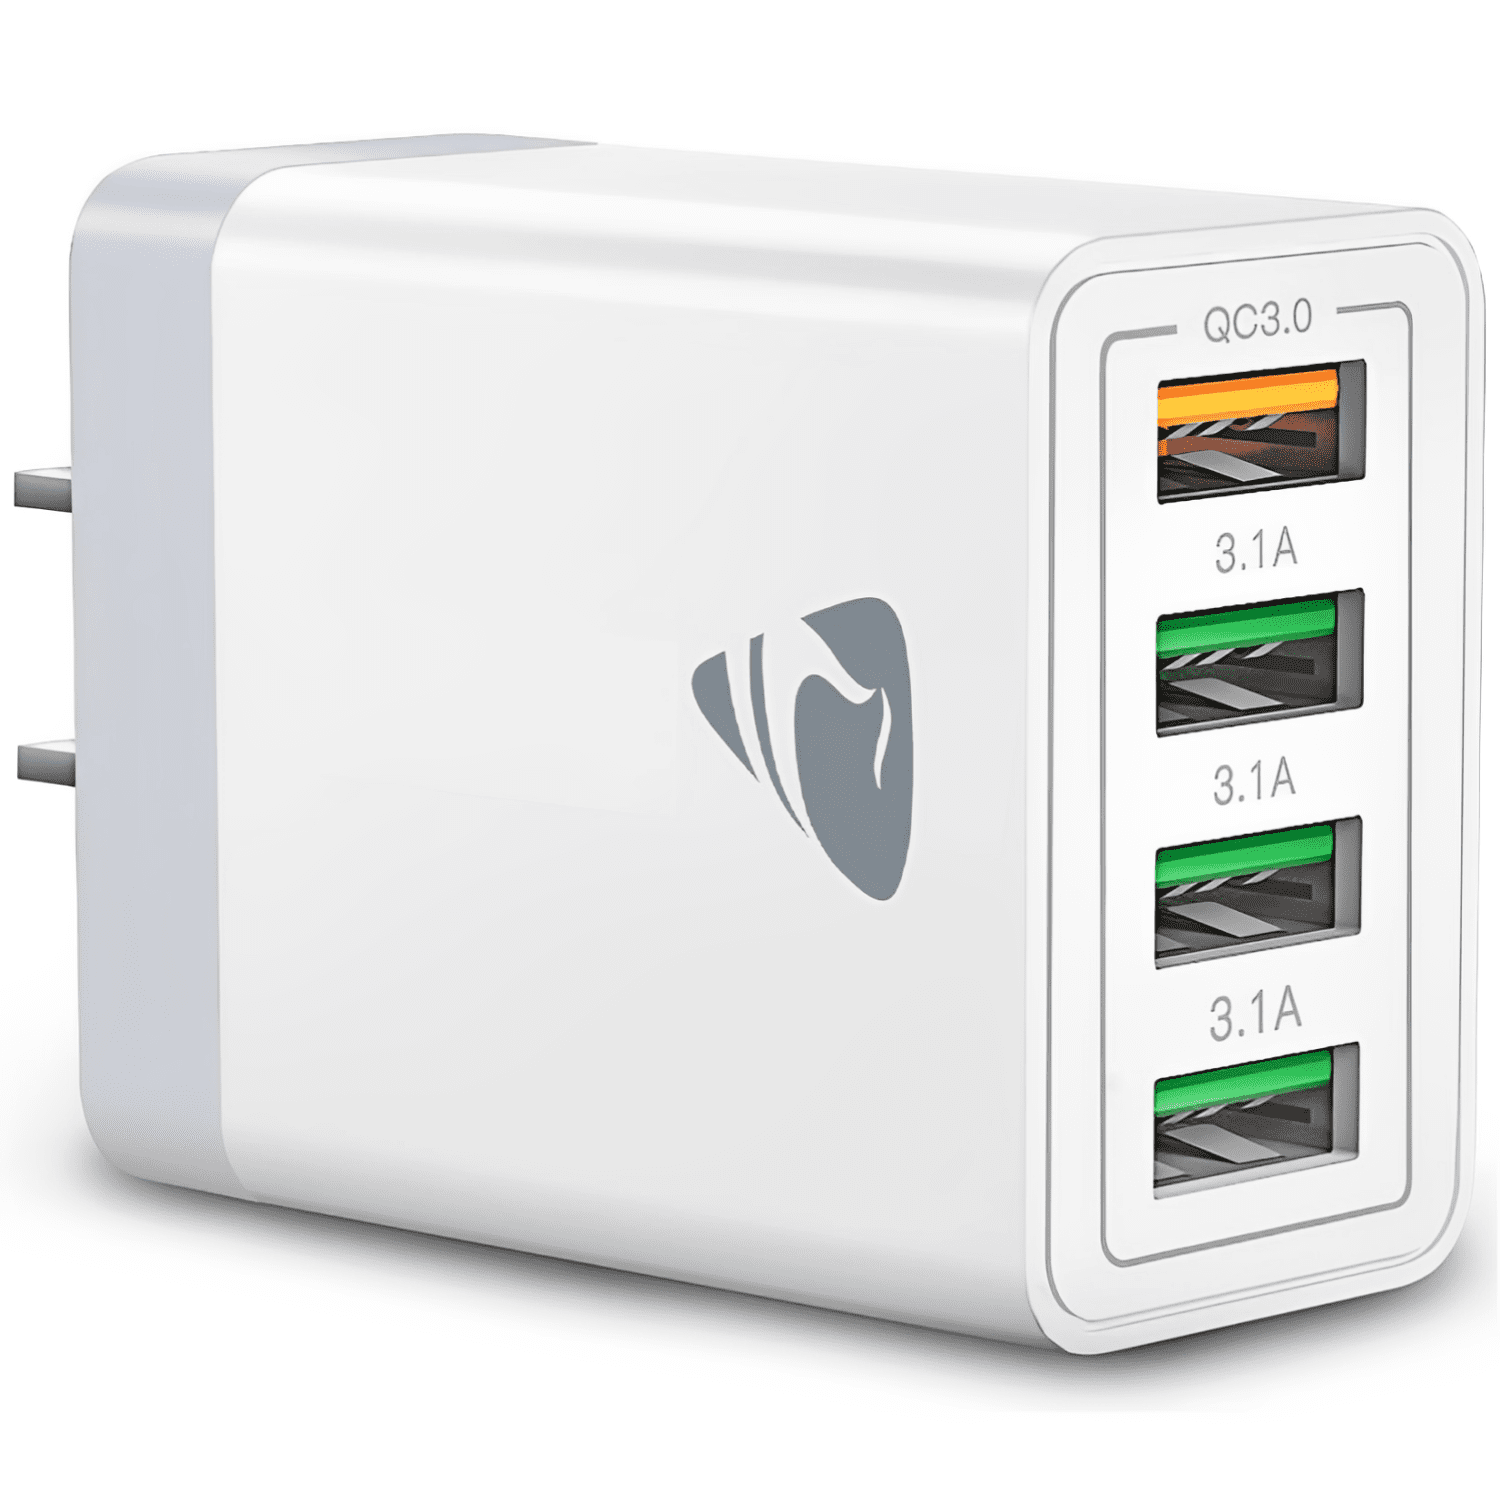 Anker USB 3.0 9-Port Hub + 5V 2.1A Smart Charging Port with 12V 5A